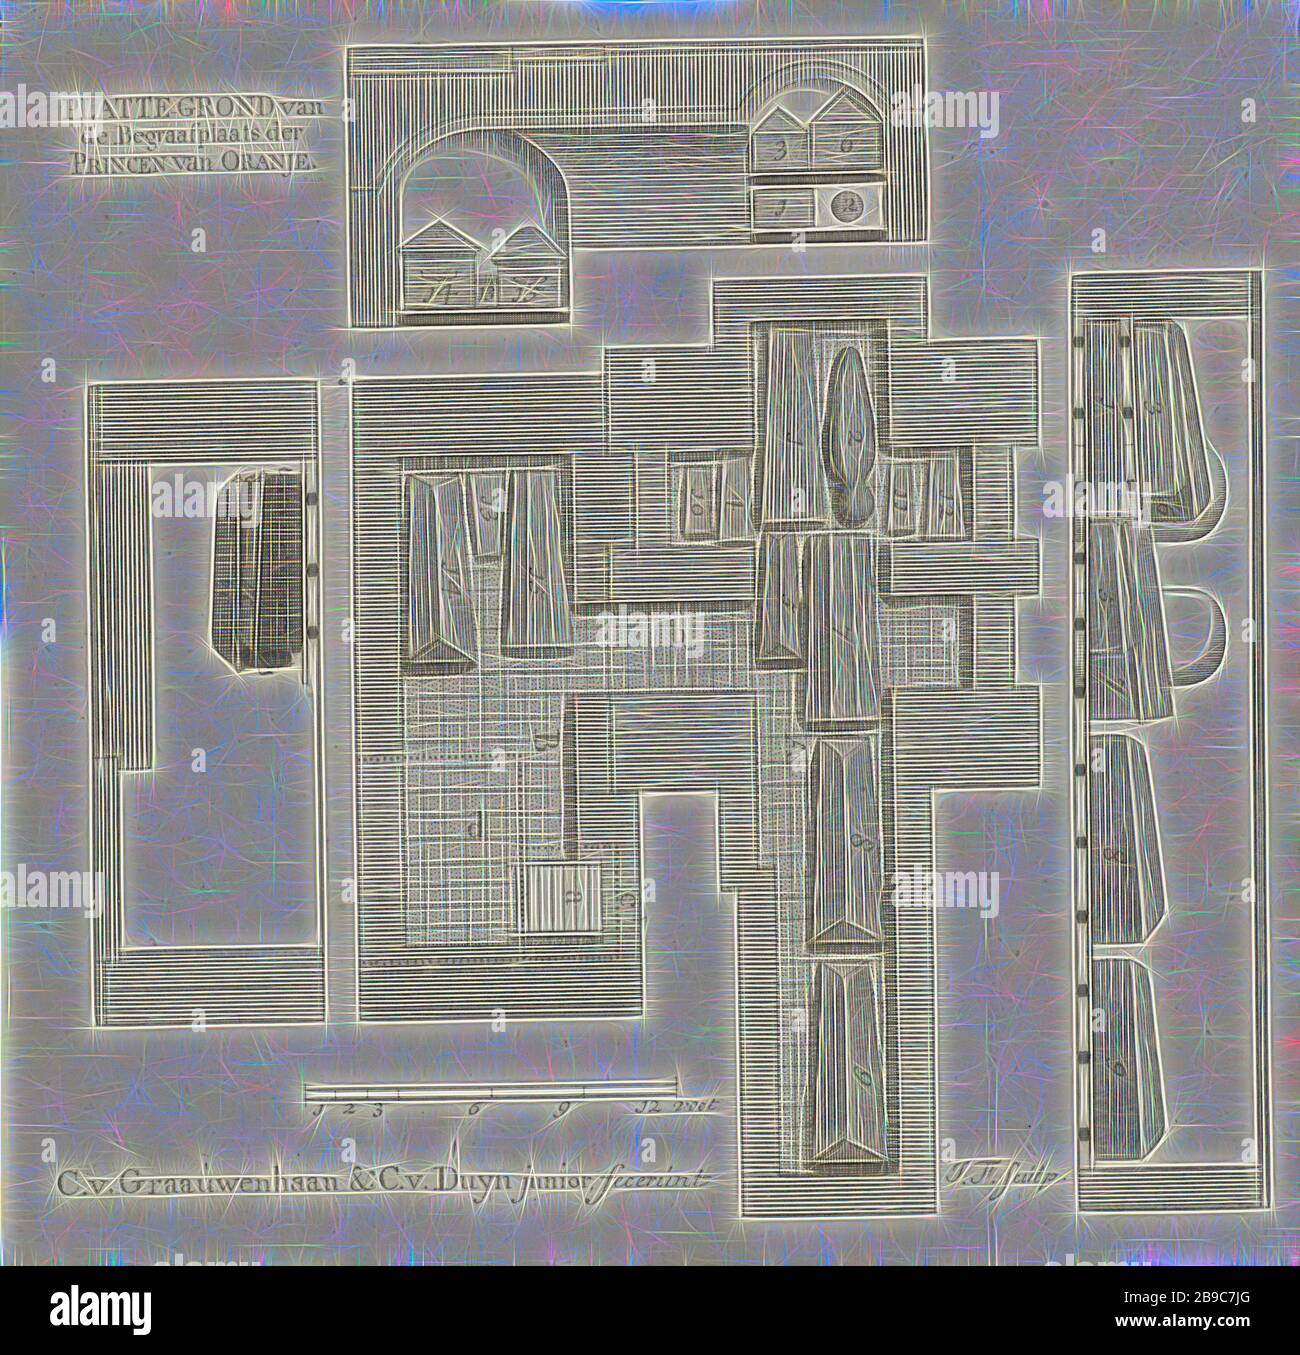 Floor Plan Of The Burial Cellar Of Oranje Nassau Floor Plan Of The